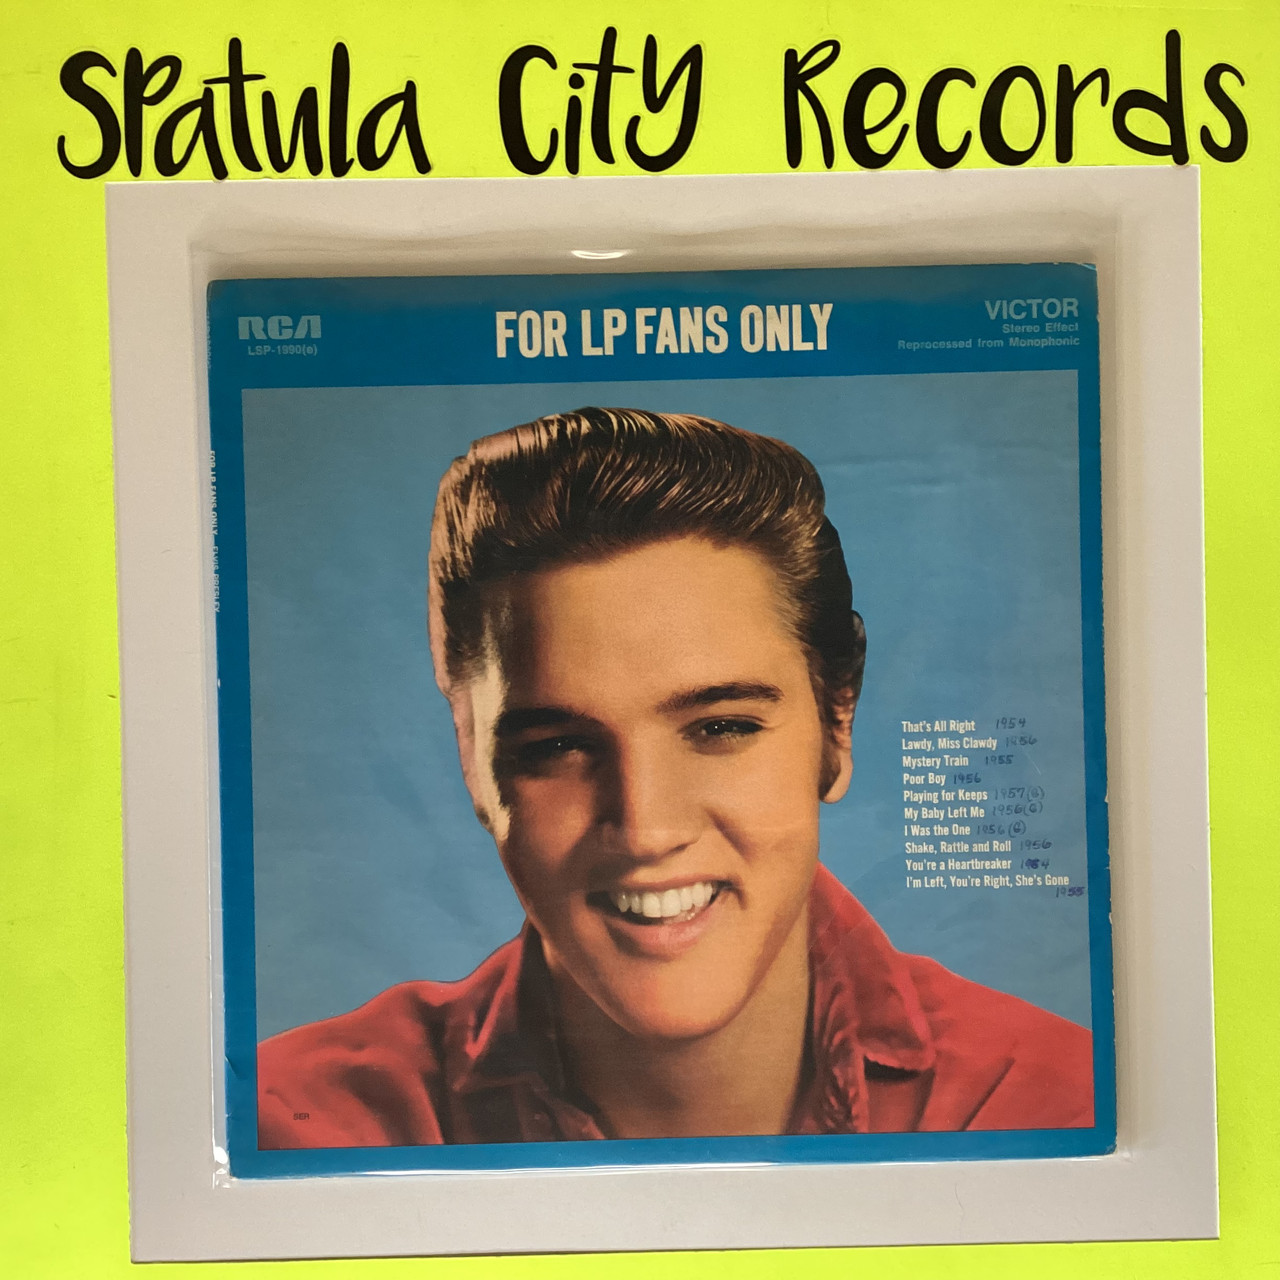 Elvis Presley - For LP Fans Only  - vinyl record album LP